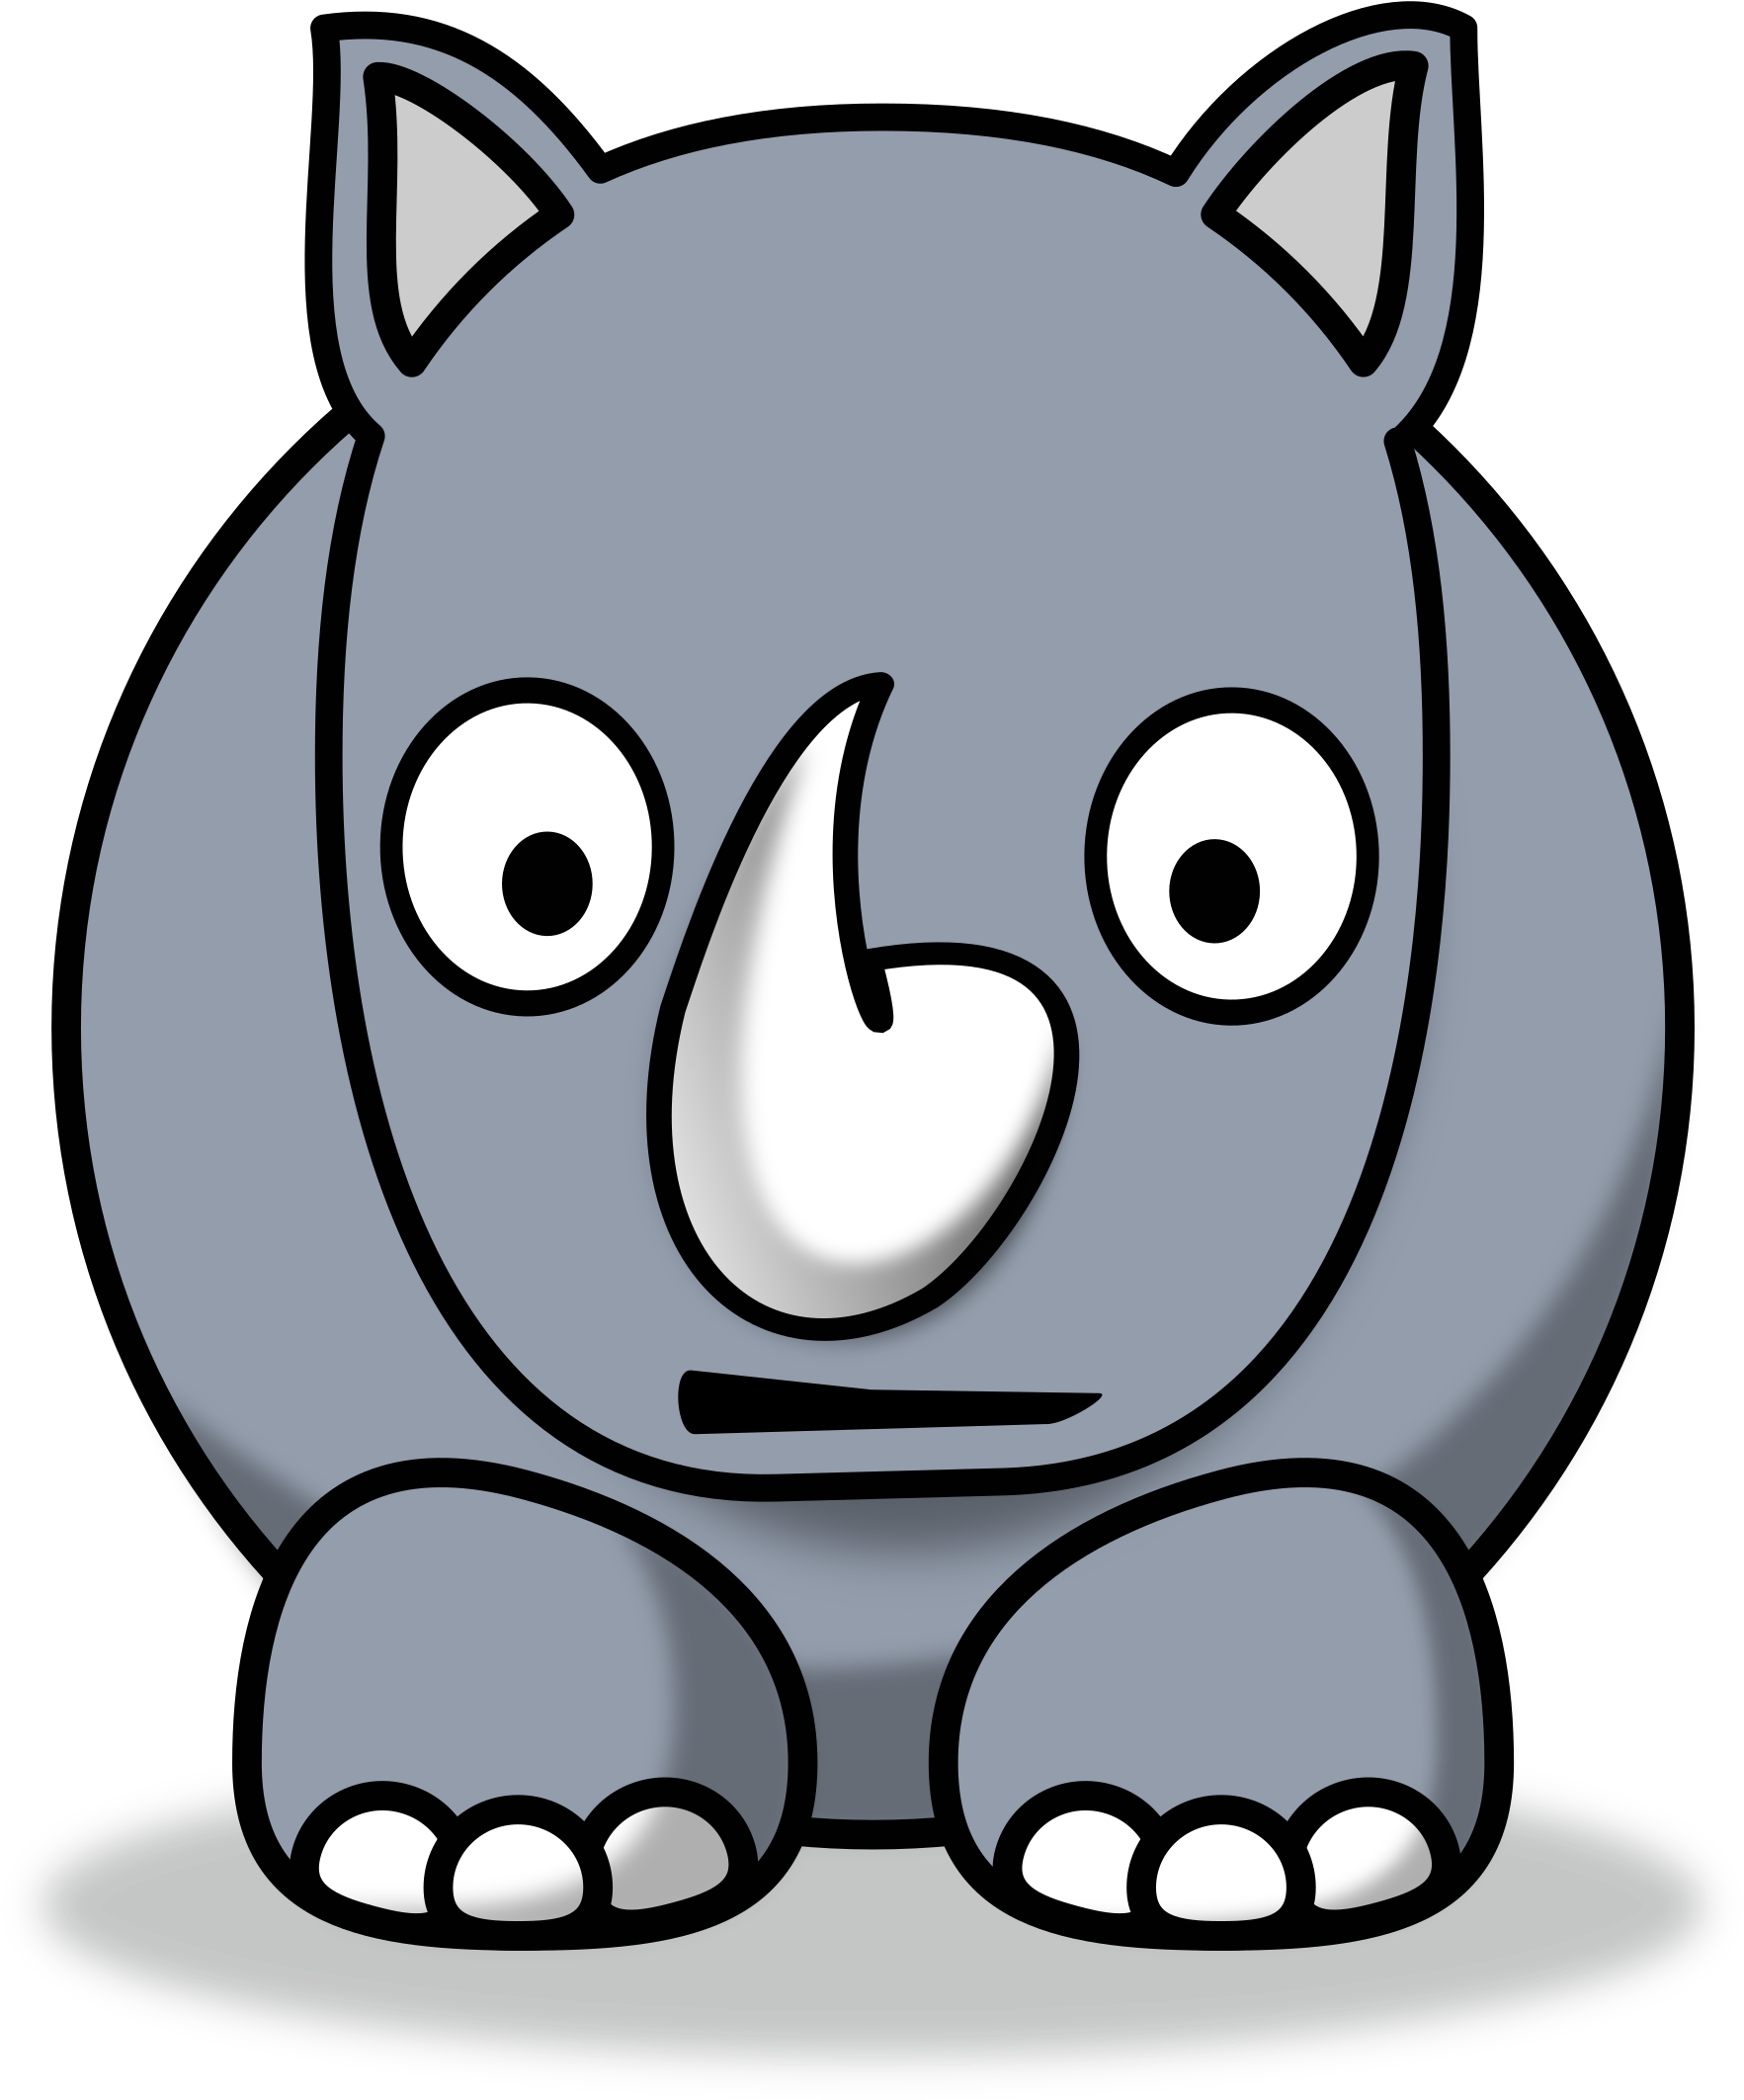 A Cartoon Rhinoceros With A Horn